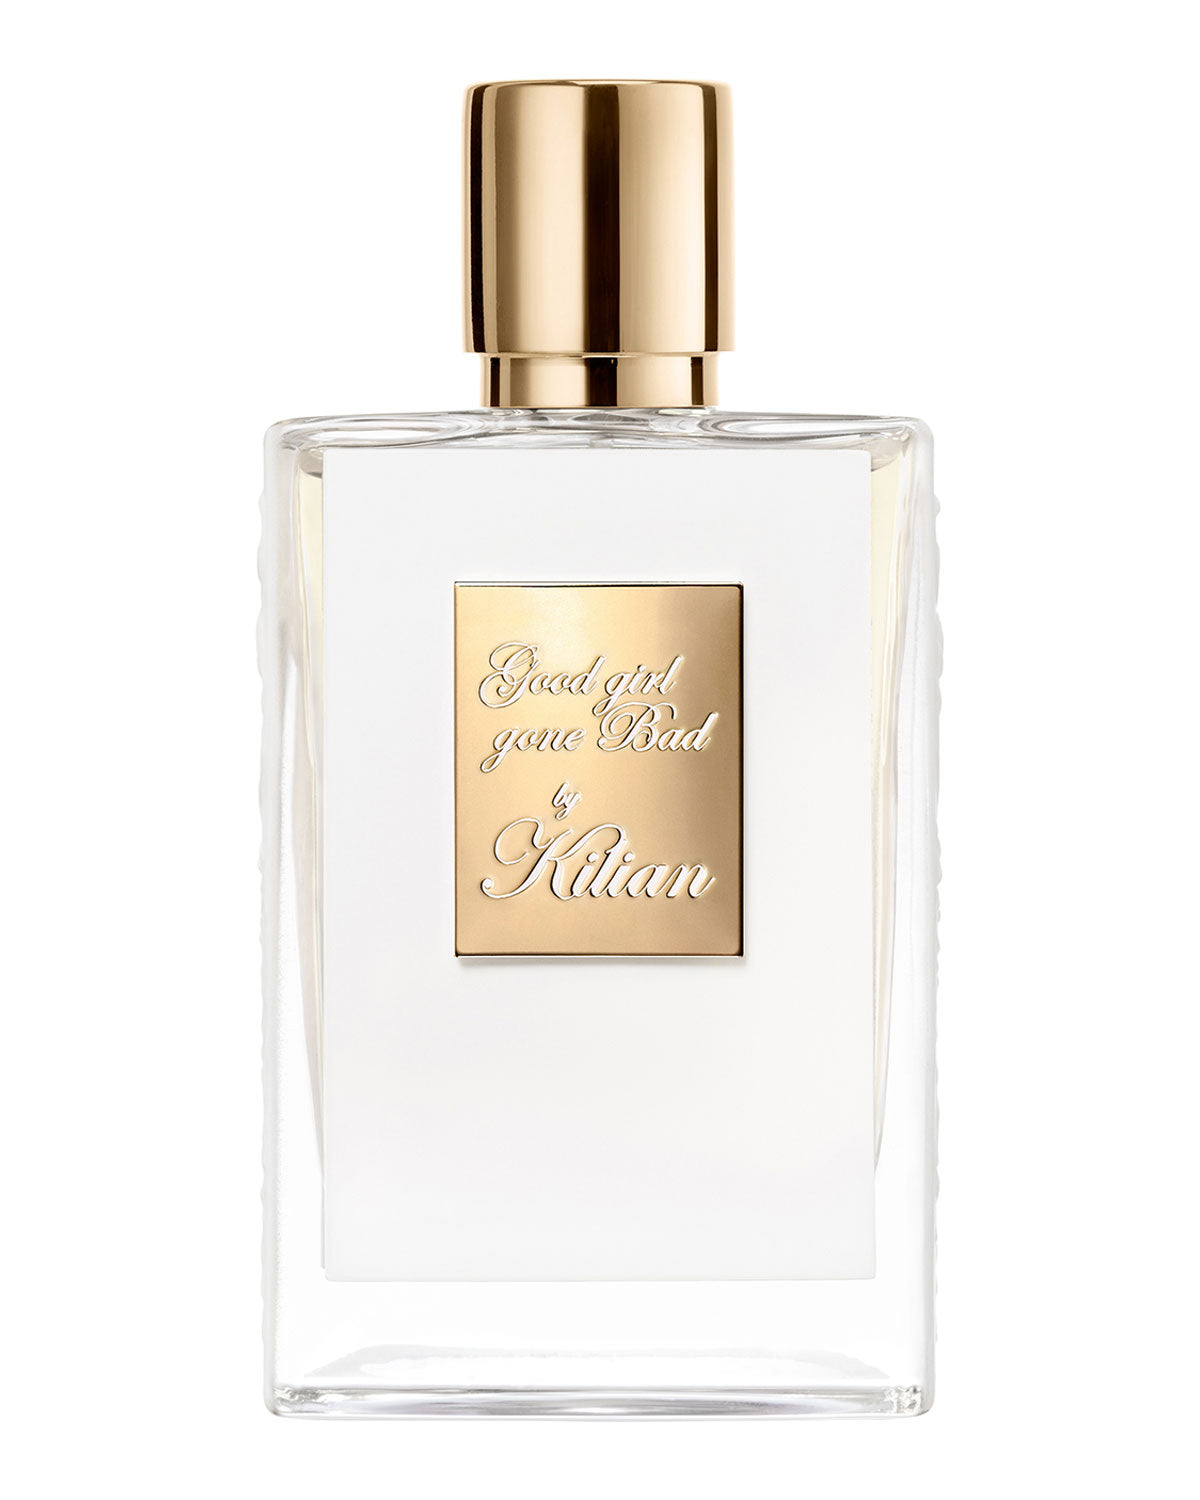 Kilian Good Girl Gone Bad Eau de Parfum, 1.7 oz.(Refillable Bottle, No Clutch)